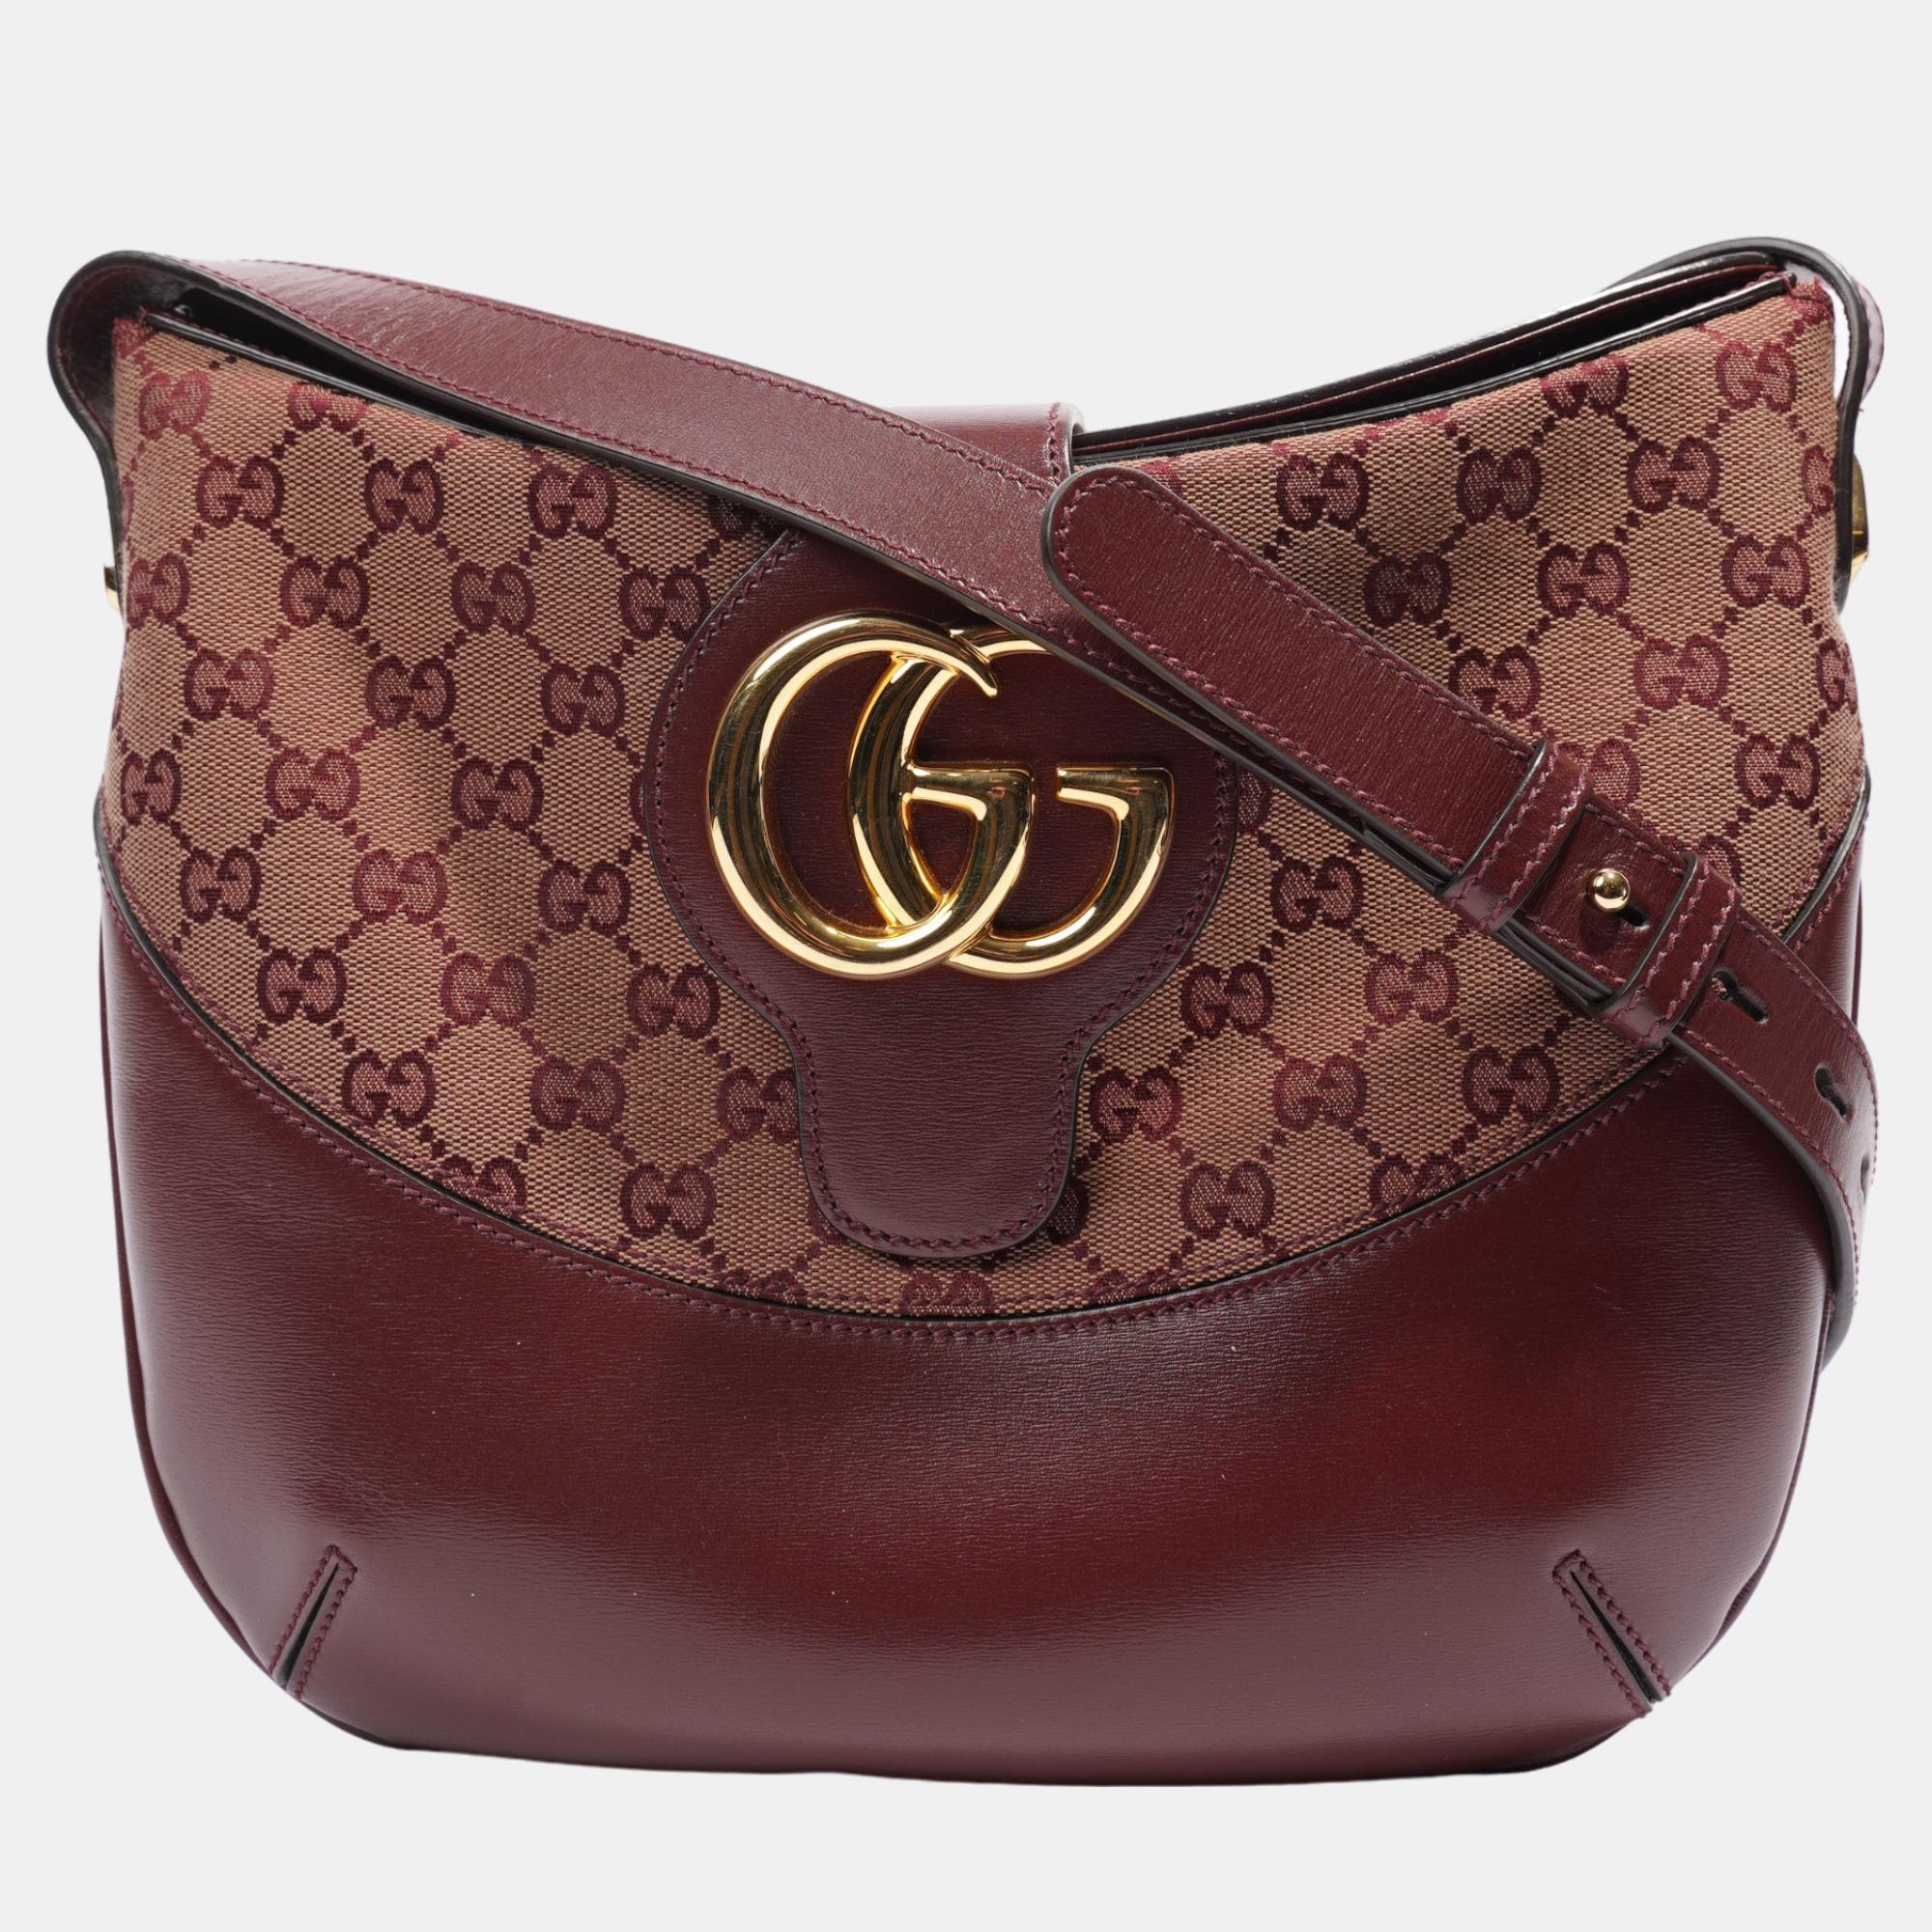 Gucci GG Shoulder Bag Burgundy Canvas